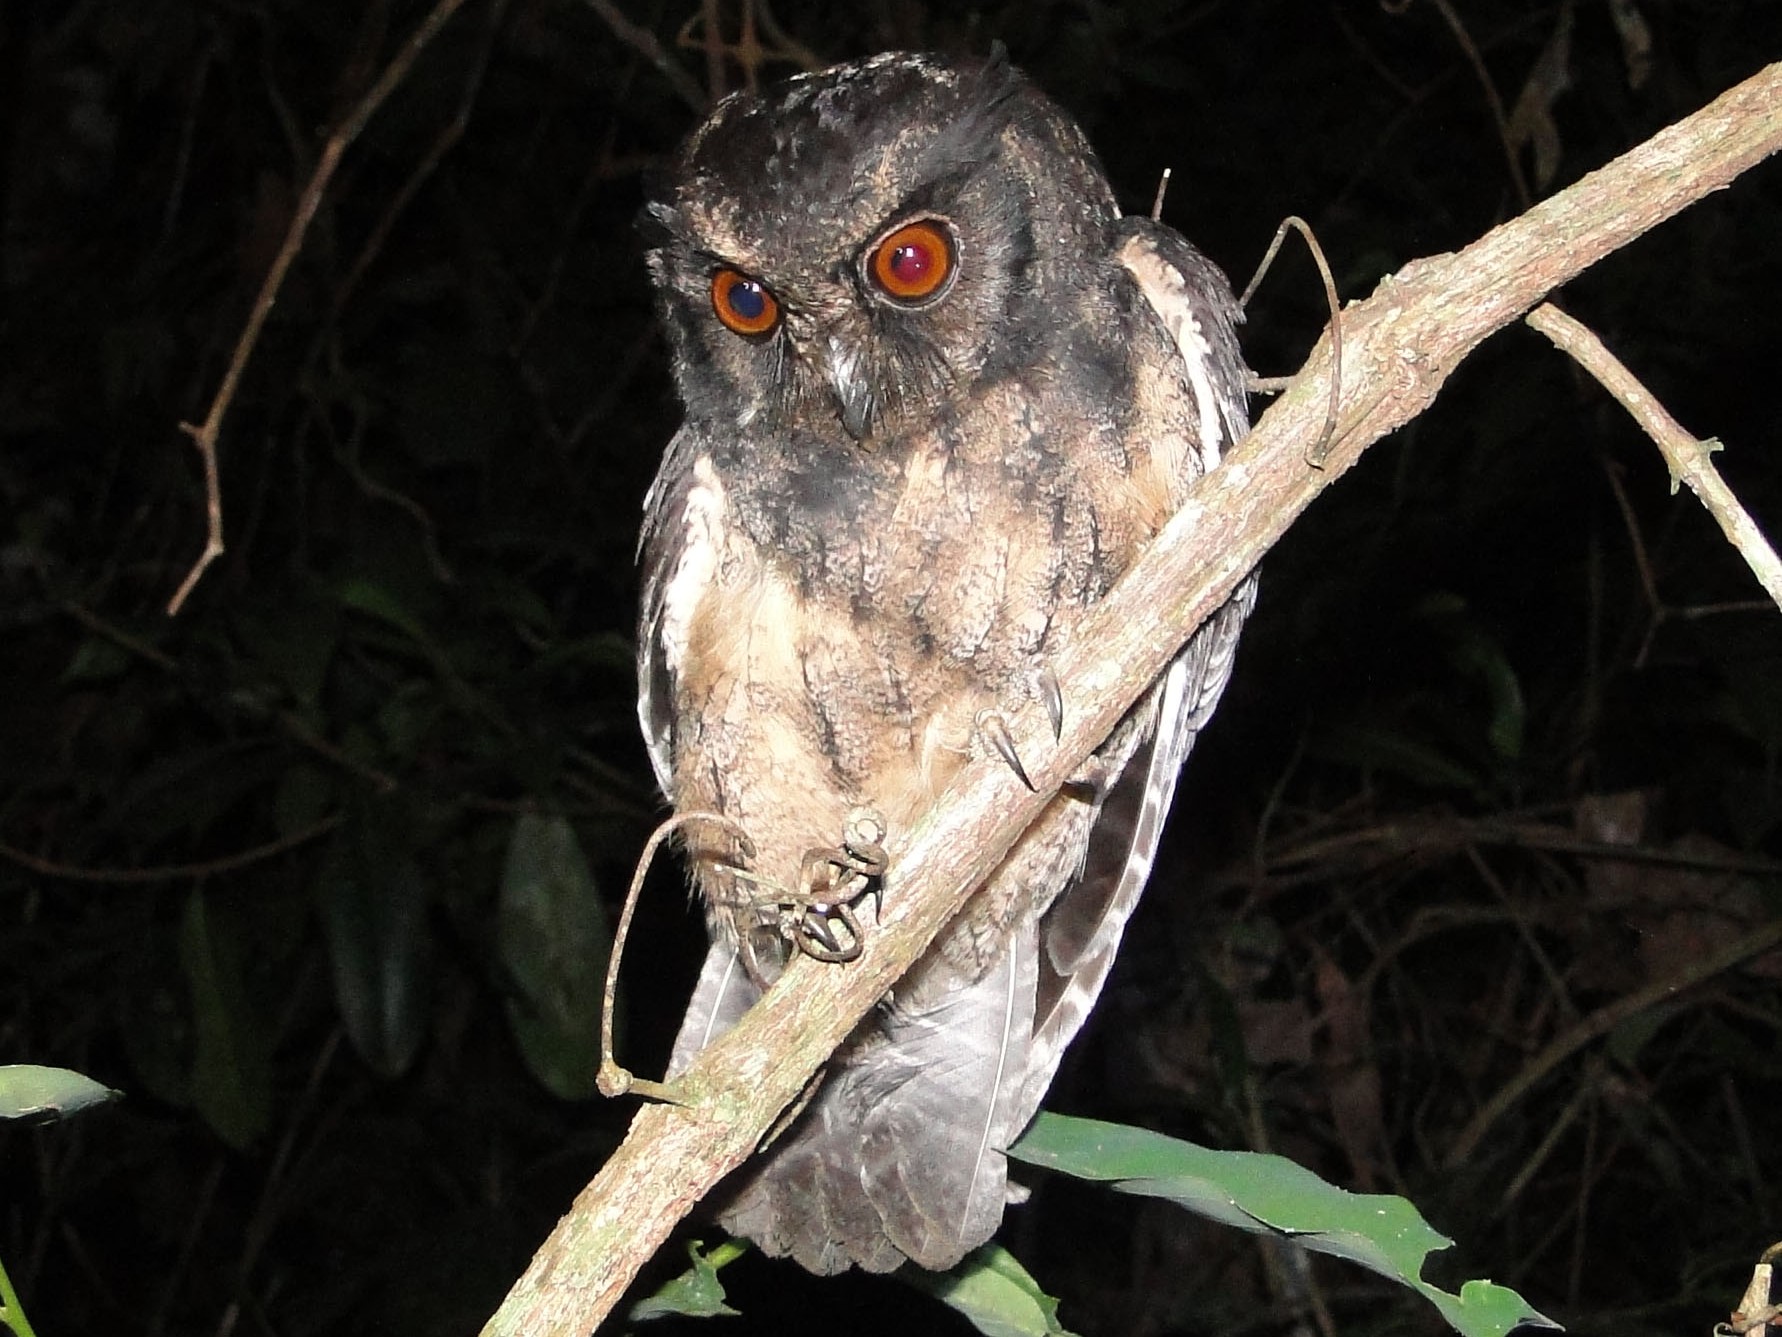 A Brazilian Belém screech owl (Megascops ater)